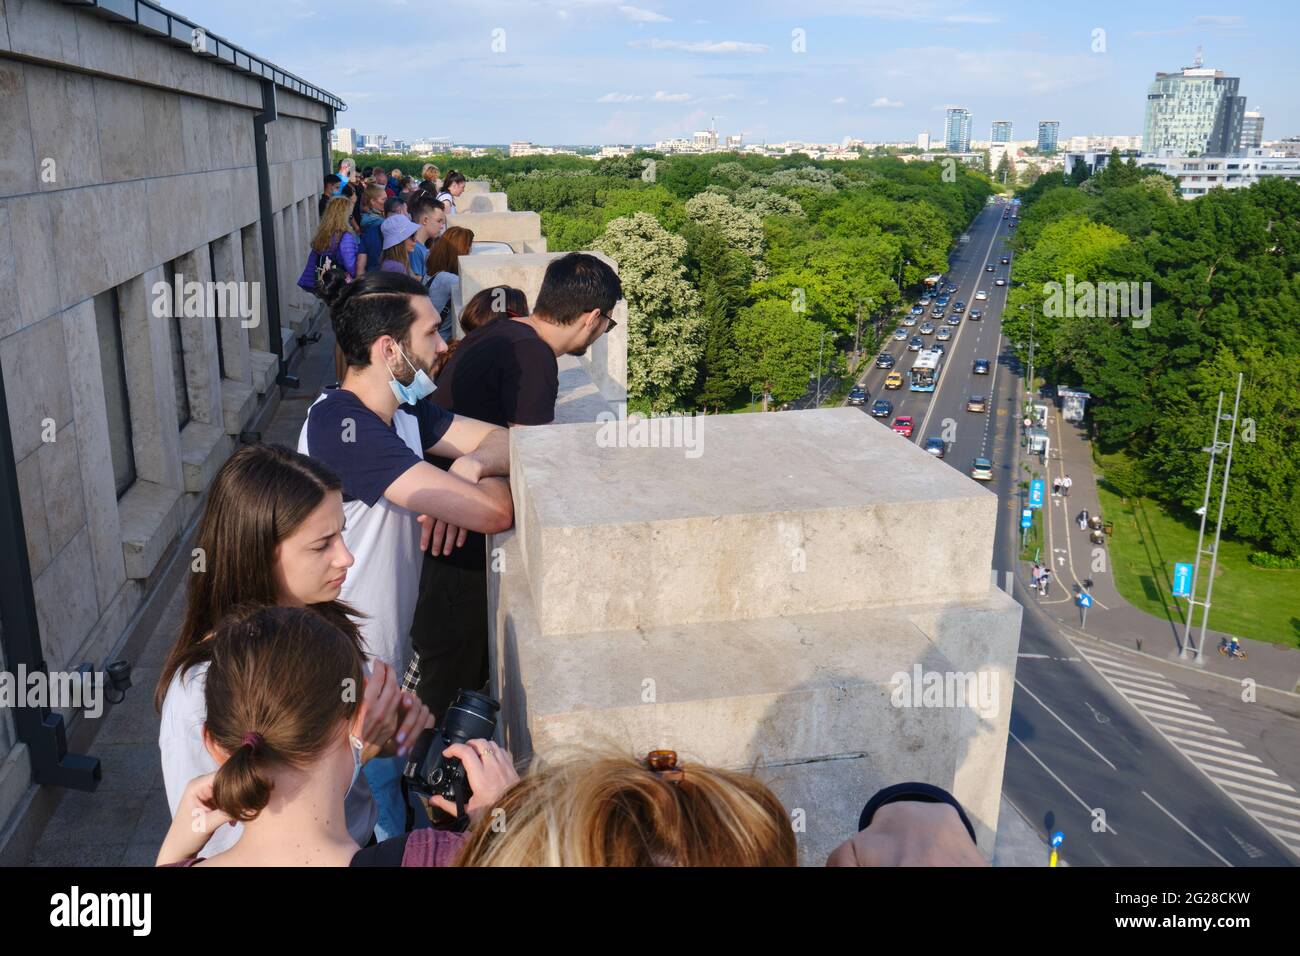 La gente visita la terraza superior del Arco del Triunfo con vistas panorámicas hacia la ciudad. Bucarest, Rumania - 6 de junio de 2021. Foto de stock